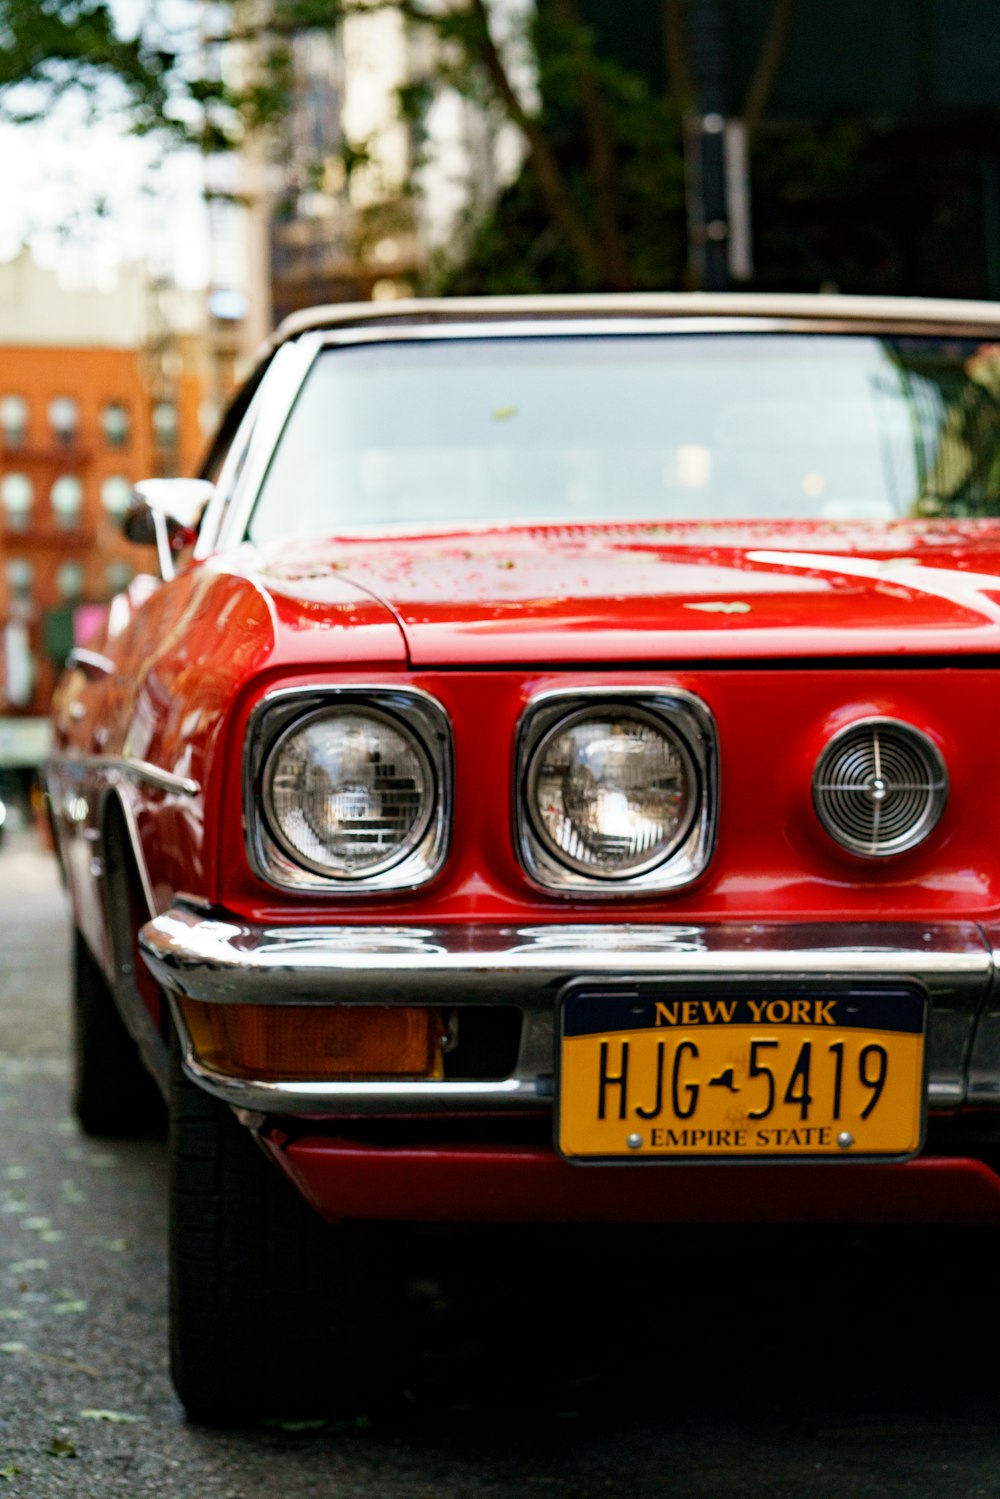 Nahaufnahme des roten Autos mit New Yorker HJG 5419 Nummernschild